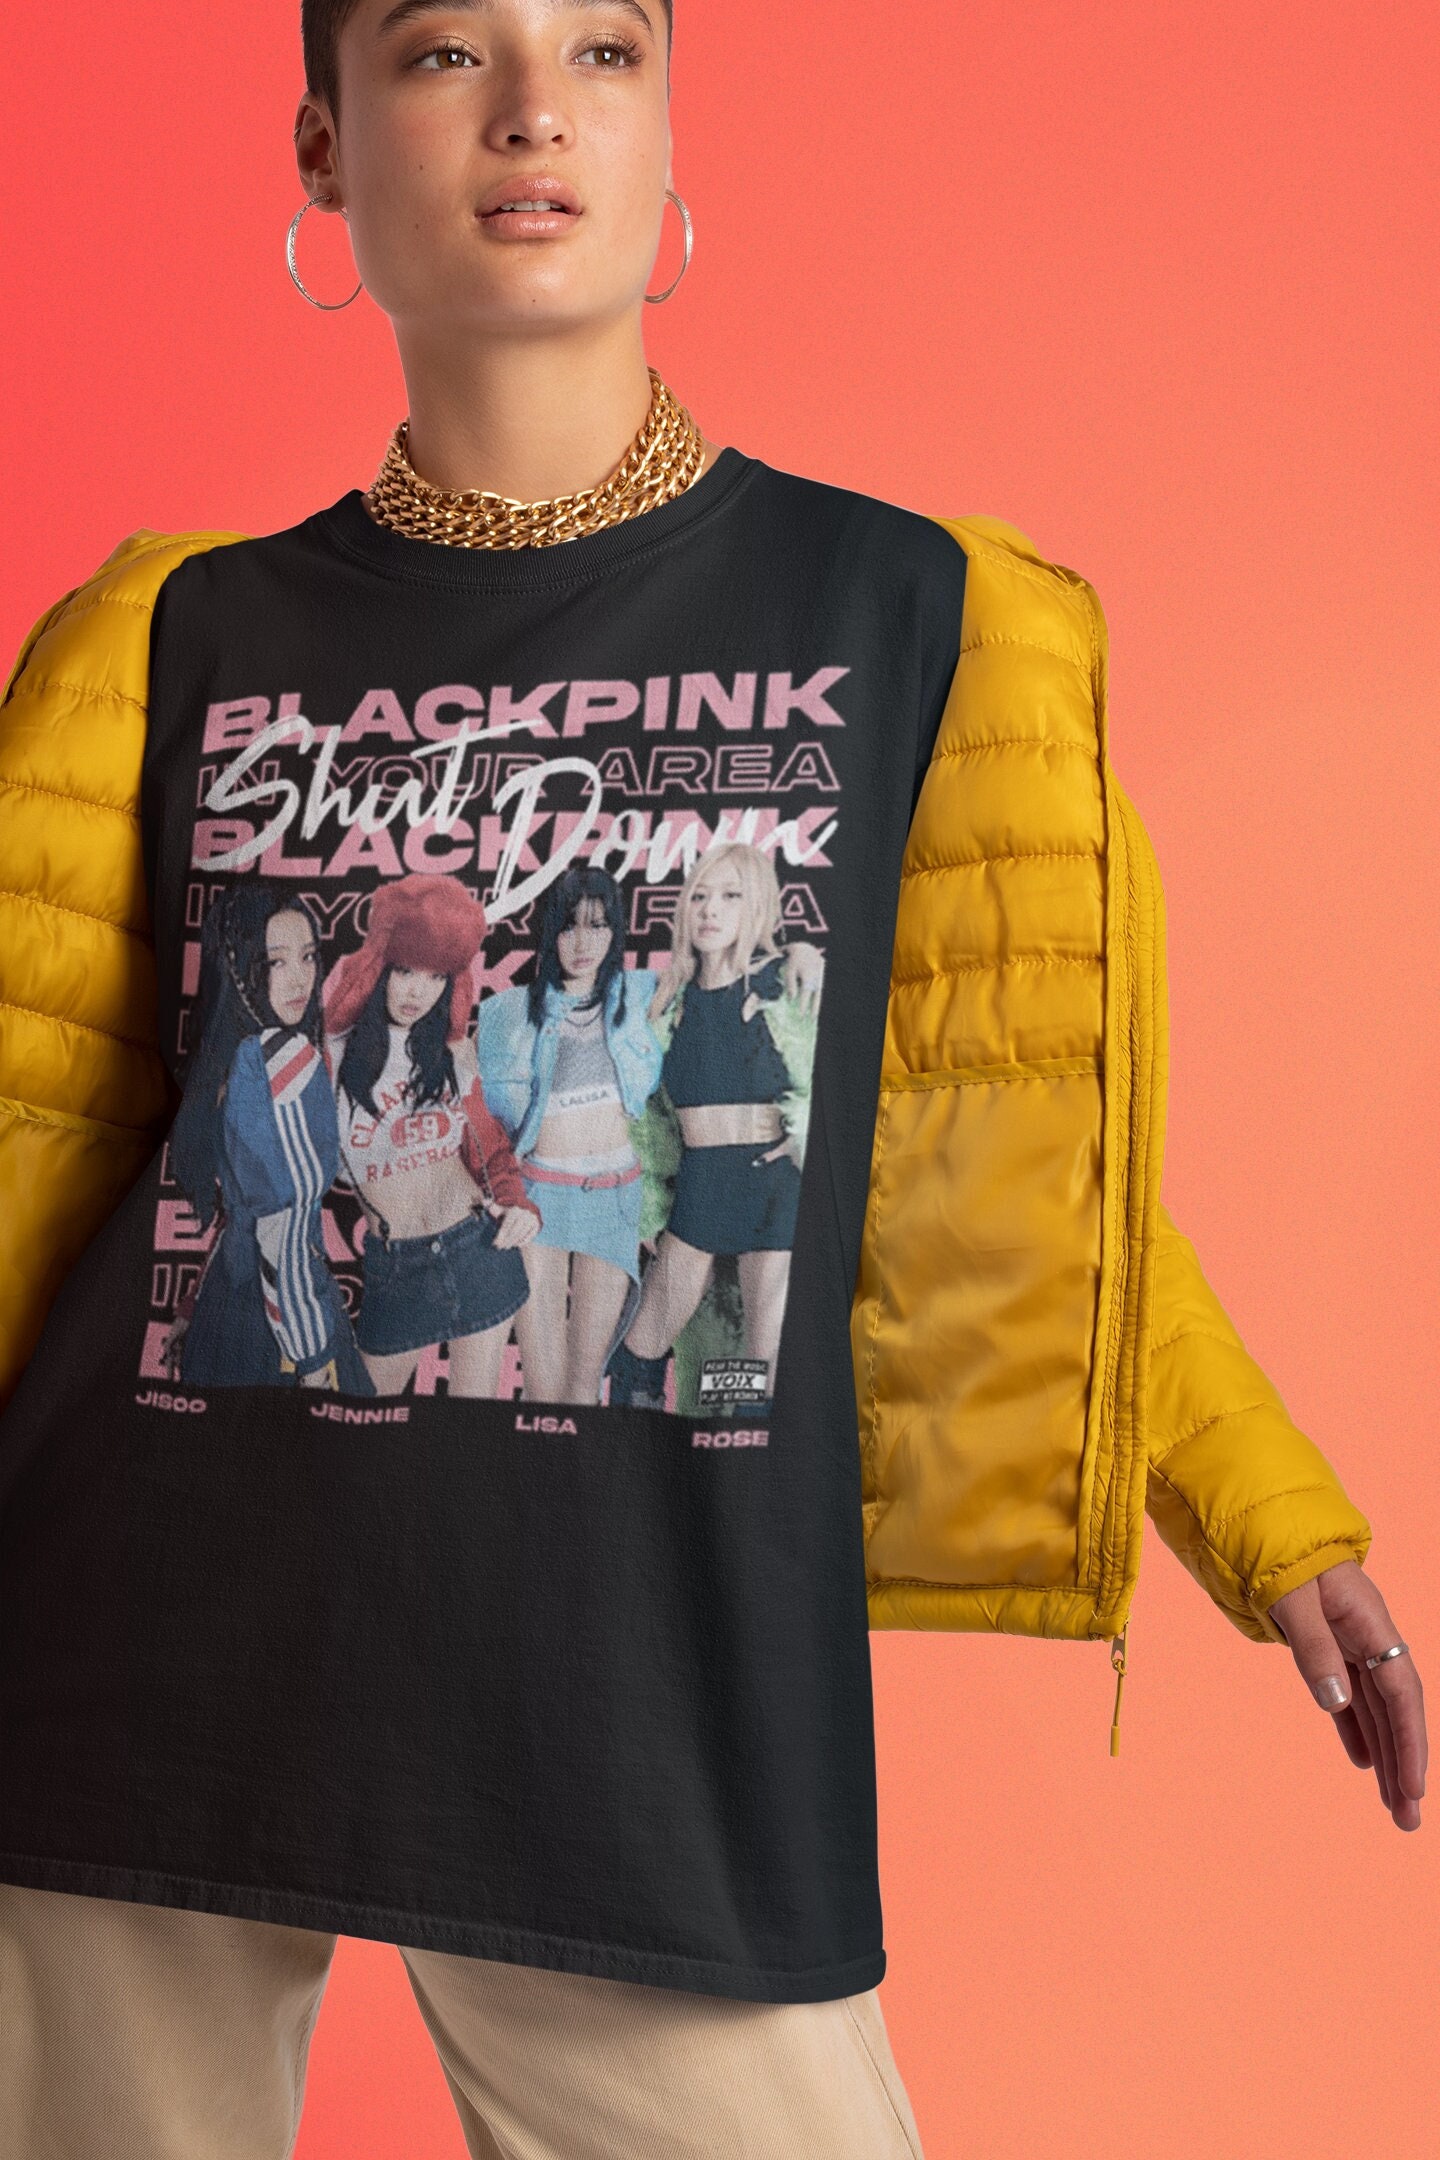 Discover Camiseta Blackpink Tour Mundial Born Pink Concierto 2022 Vintage para Hombre Mujer